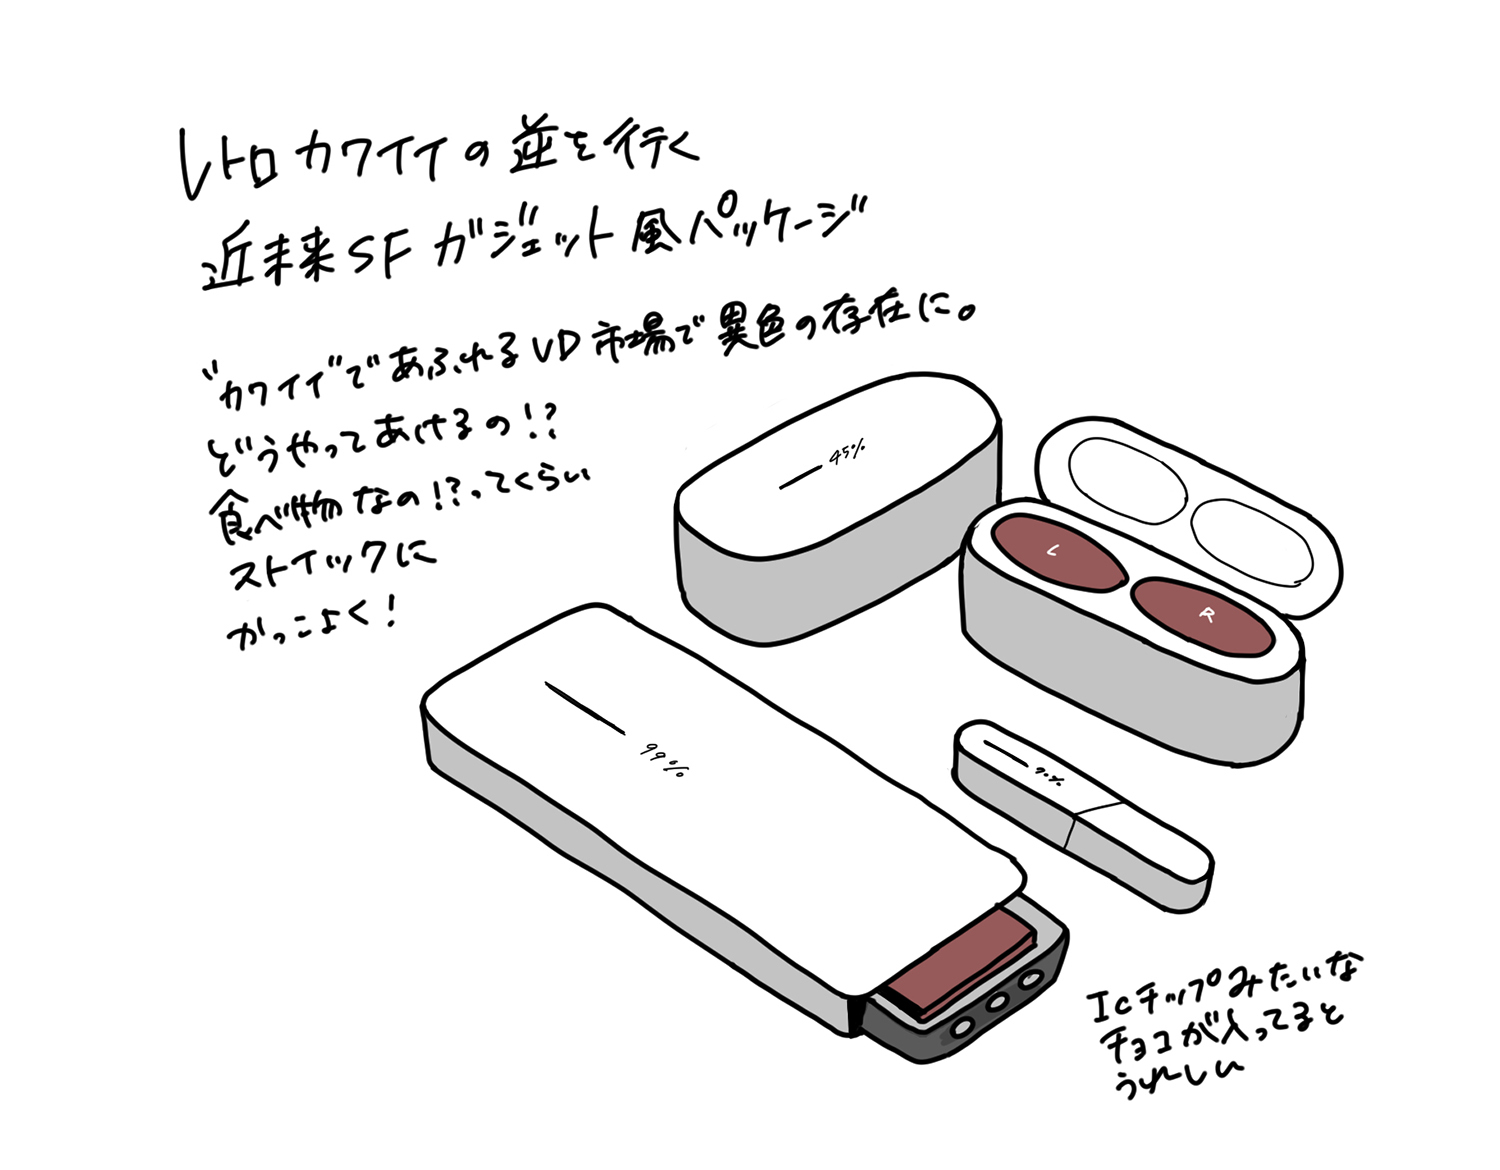 あったらいい な T3デザイナーが21バレンタインの食品パッケージ考えてみました 社員ブログ パッケージデザイン会社 株式会社t3デザイン 東京都渋谷